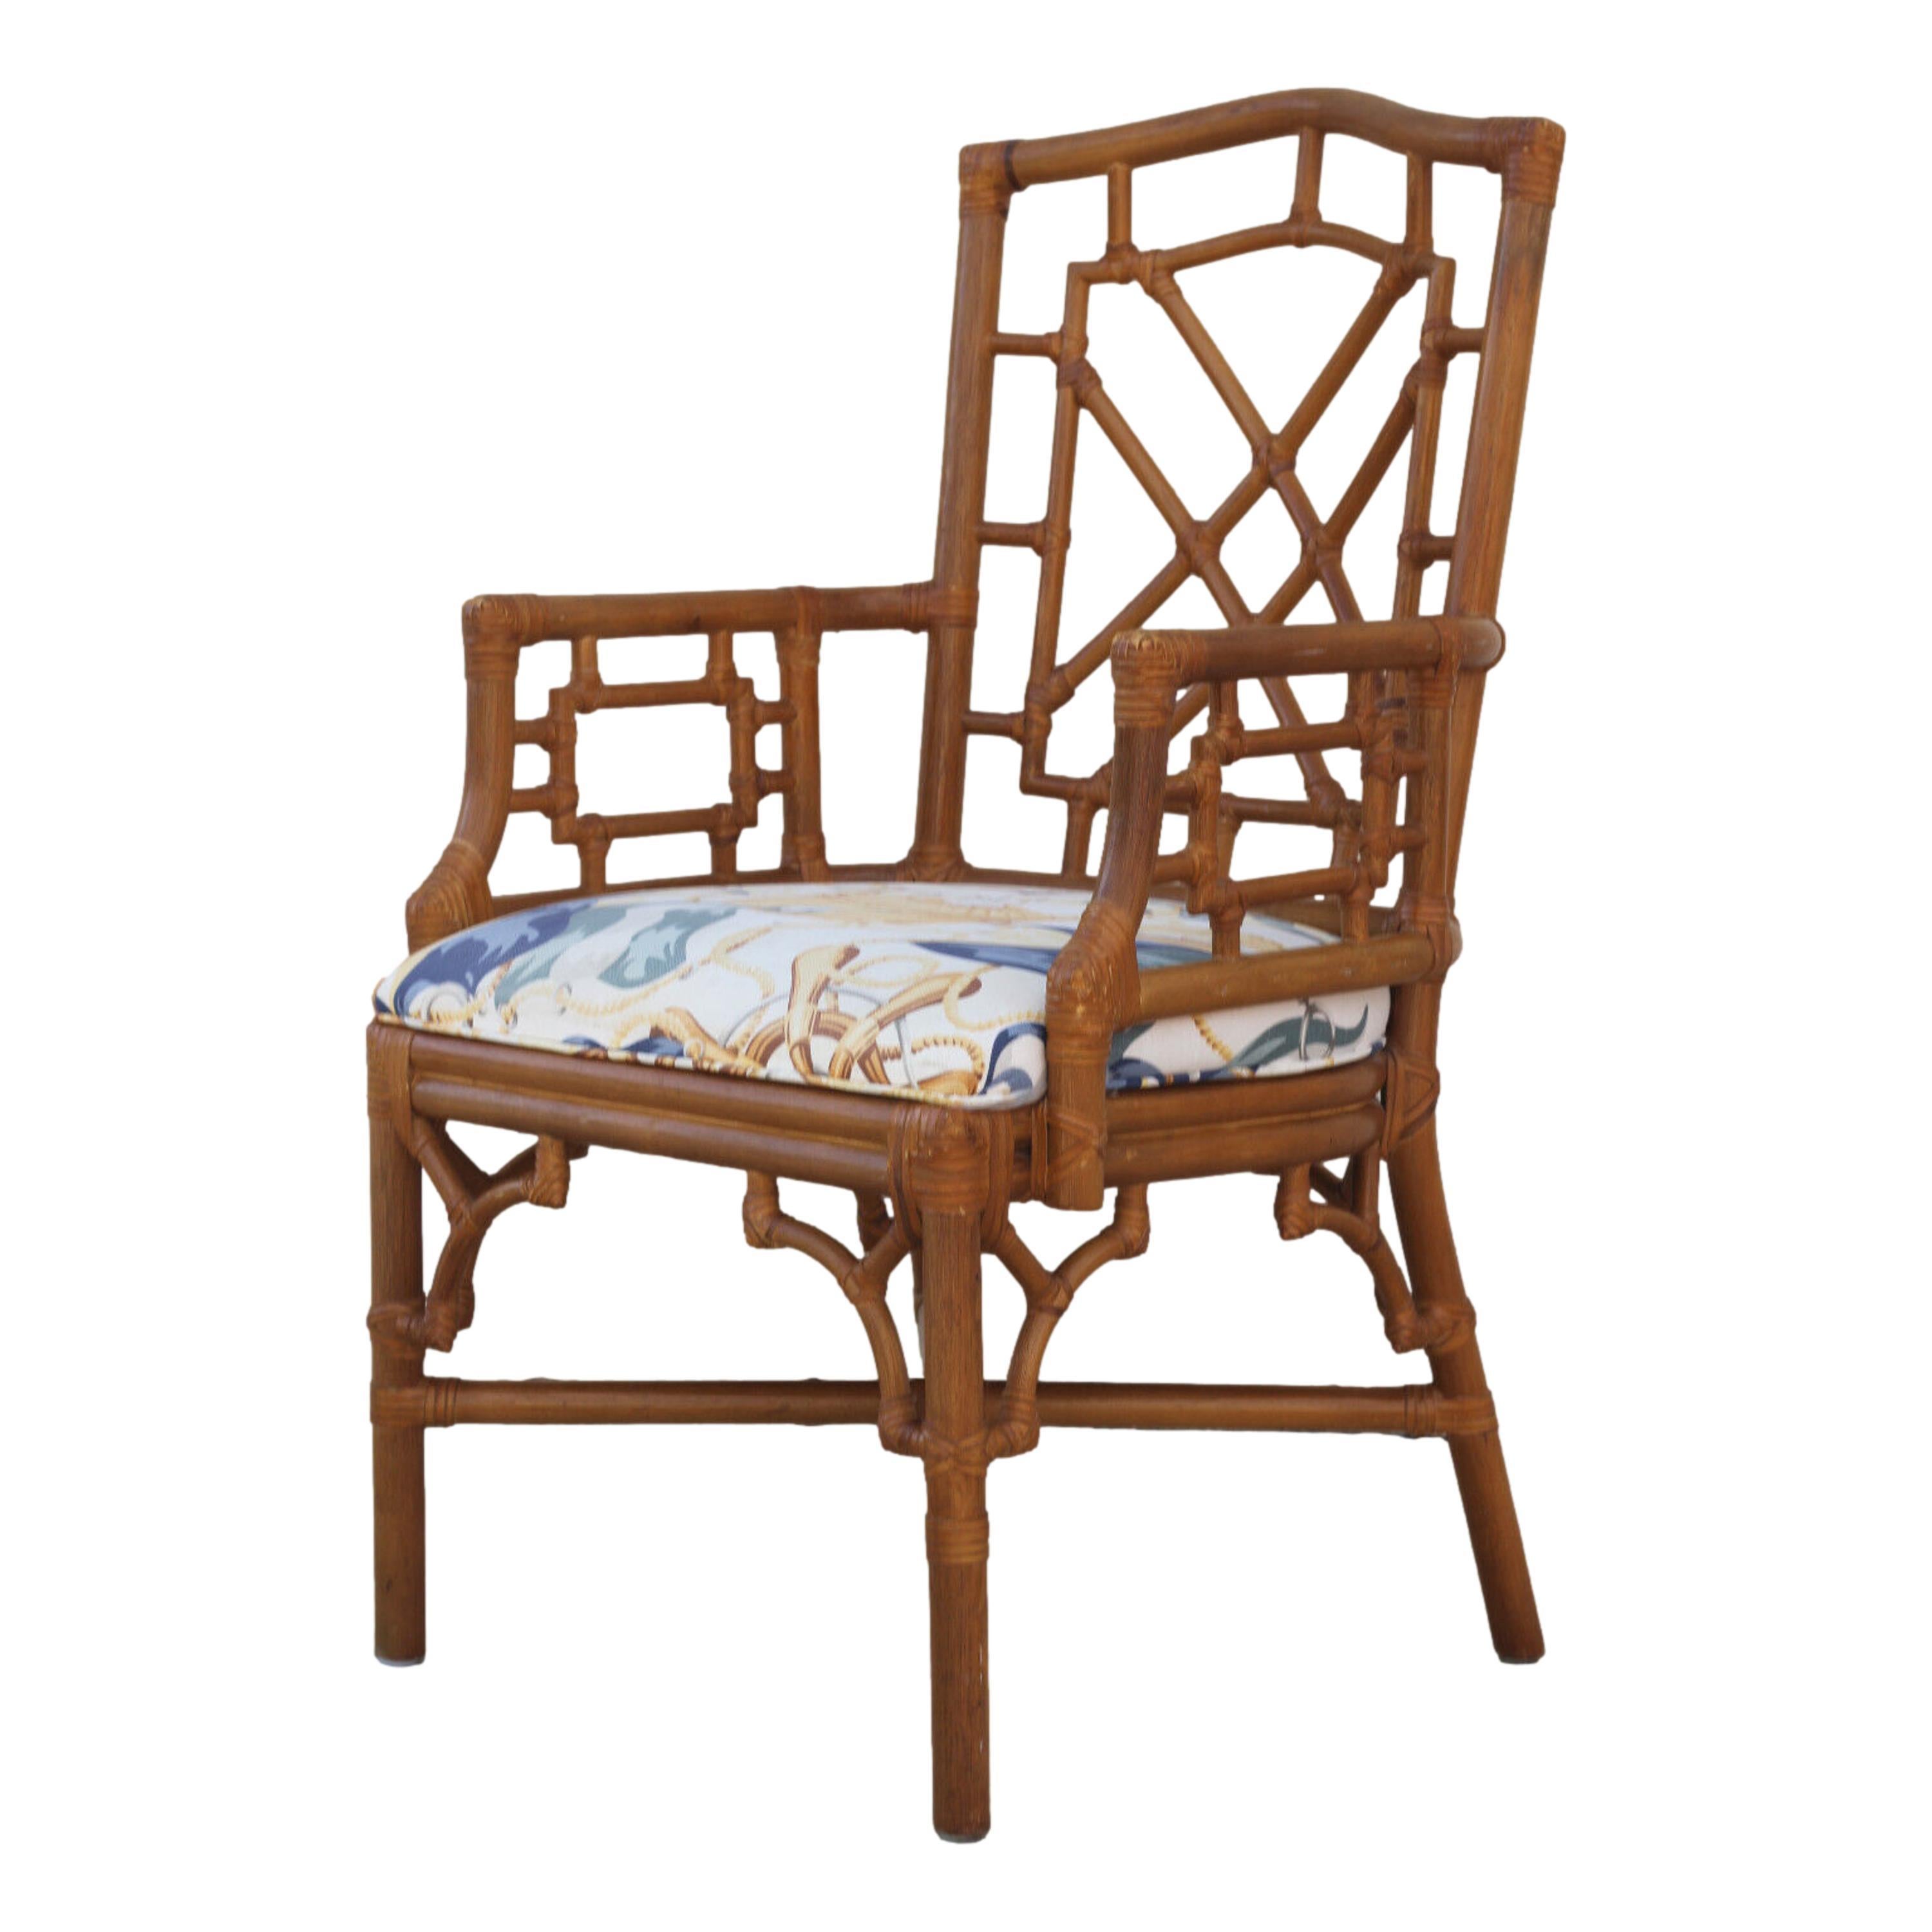 Ein schöner Satz von acht Vintage-Rattan-Sesseln von Lexington. Die Stühle im chinesischen Chippendale-Stil haben Rattanrahmen mit Rattan-Laubsägearbeiten an den Stuhllehnen, Armlehnen und Laubsägeecken unter den Sitzen. Die freiliegenden Gelenke